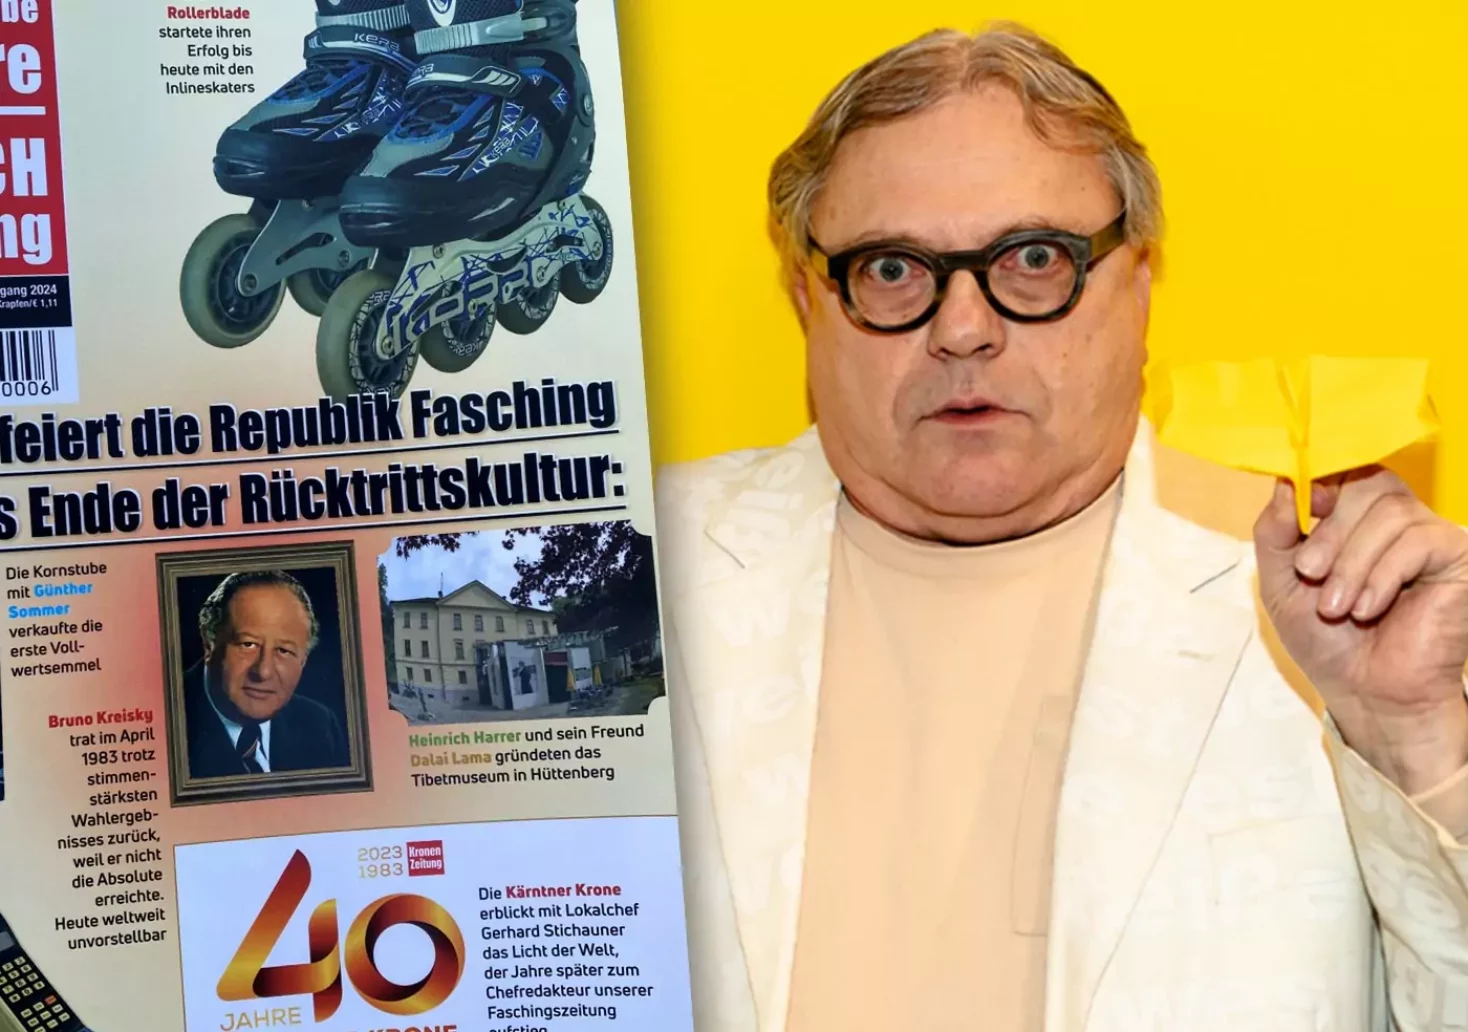 Ein Bild auf 5min.at zeigt die aktuelle Ausgabe der Faschingszeitung und Herausgeber Reinhard Eberhart mit einem Papierflieger in der Hand.